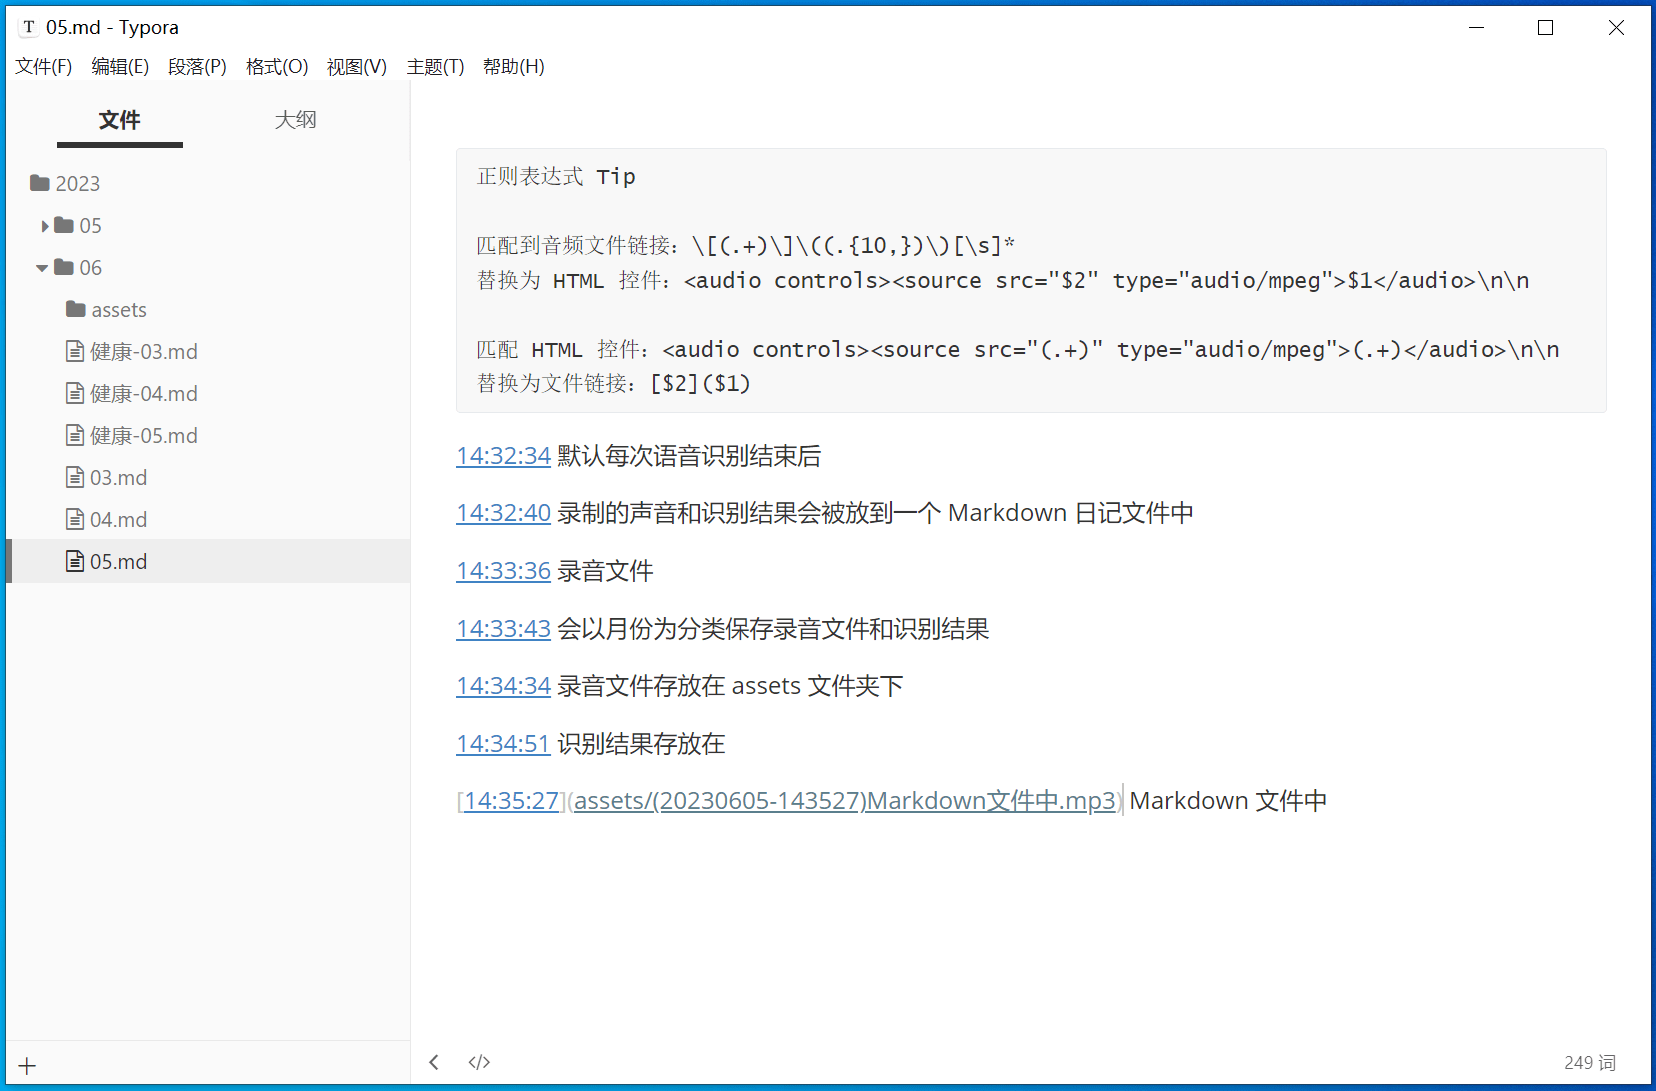 CapsWriter-Offline：电脑端离线语音输入工具 开源免费